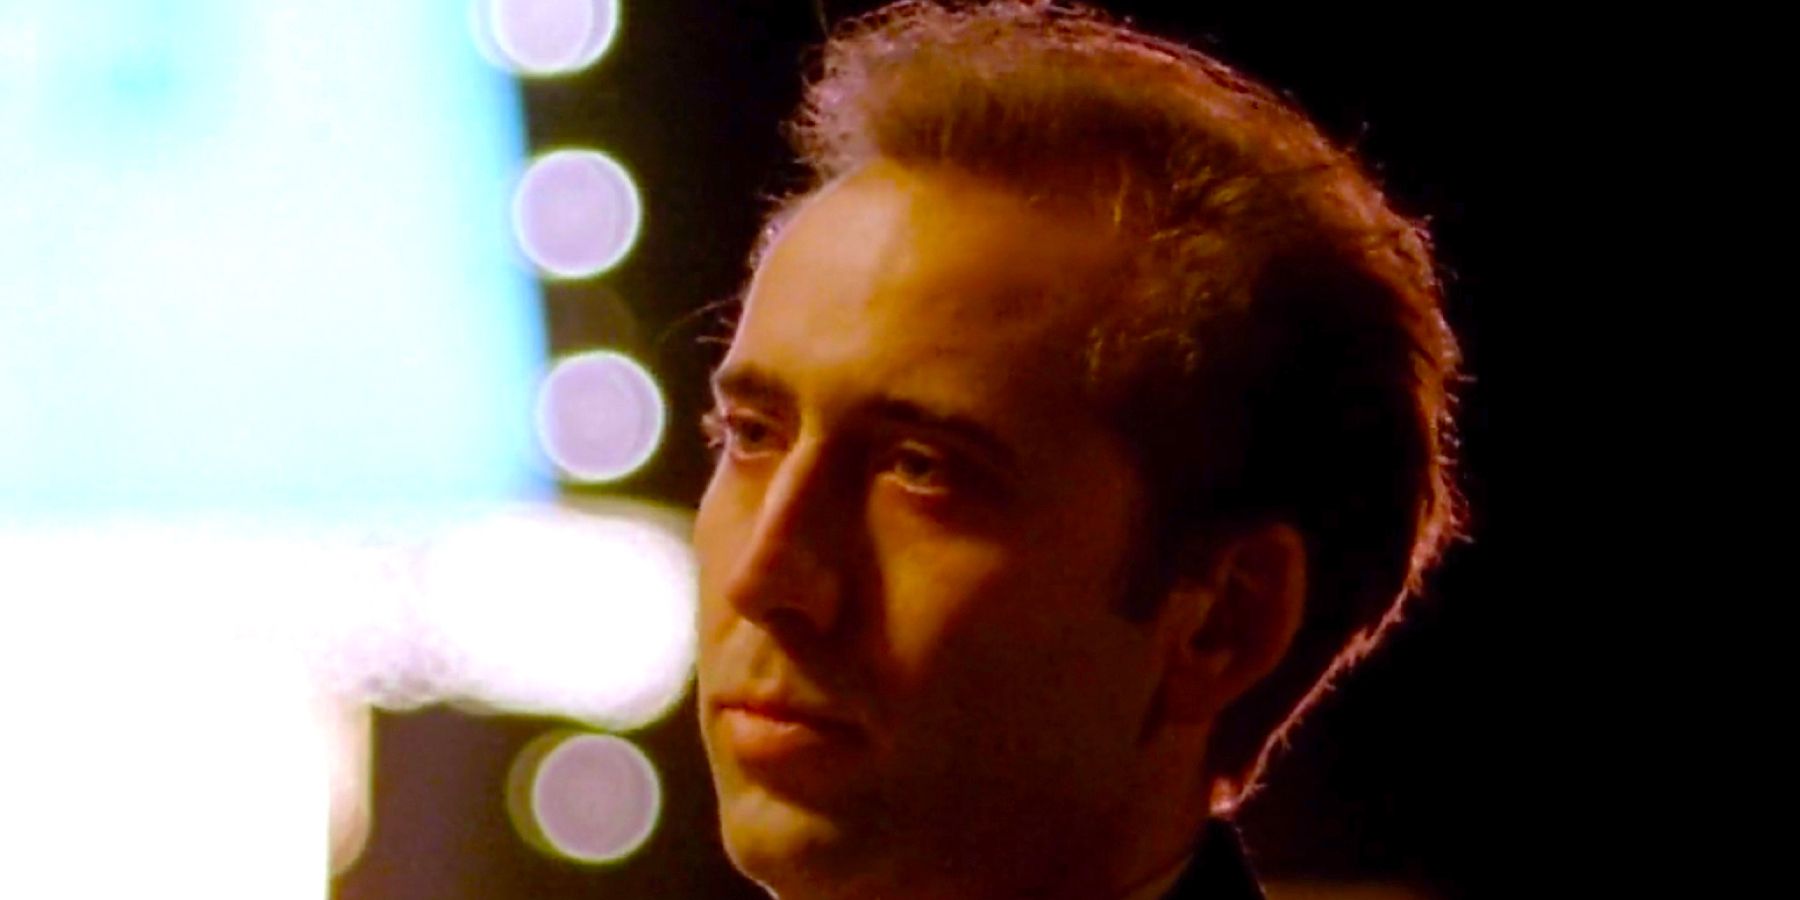 "Experimento cinematográfico de alto riesgo": Nicolas Cage recuerda la dolorosa experiencia del rodaje de la escena de su única película ganadora del Oscar